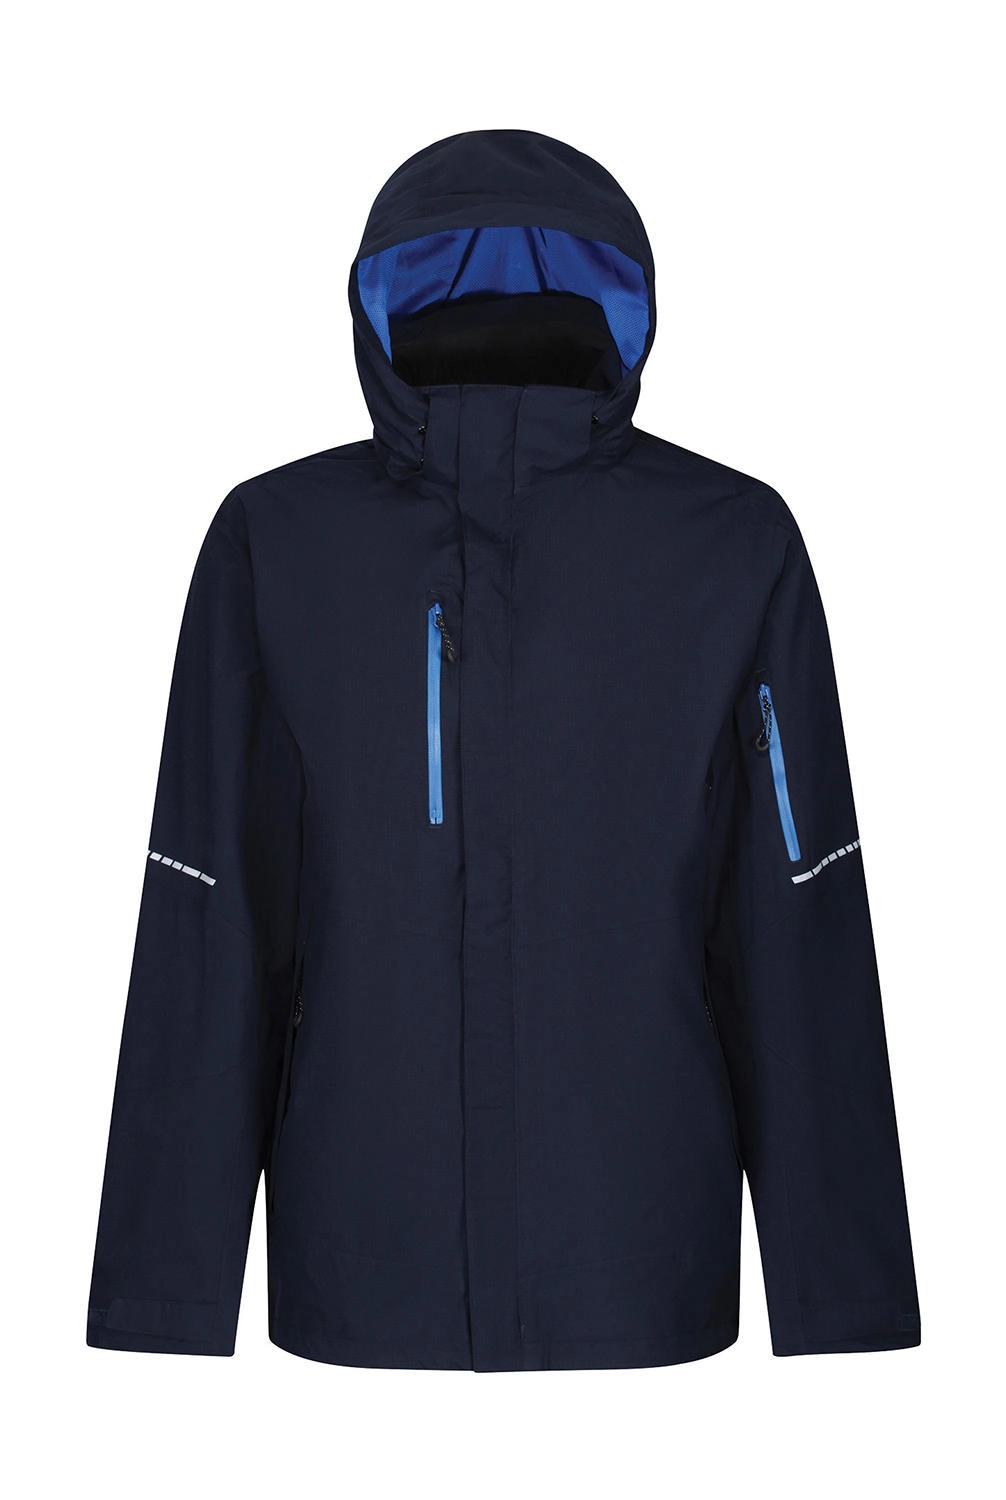 X-Pro Exosphere II Shell Jacket zum Besticken und Bedrucken in der Farbe Navy/Oxford Blue mit Ihren Logo, Schriftzug oder Motiv.